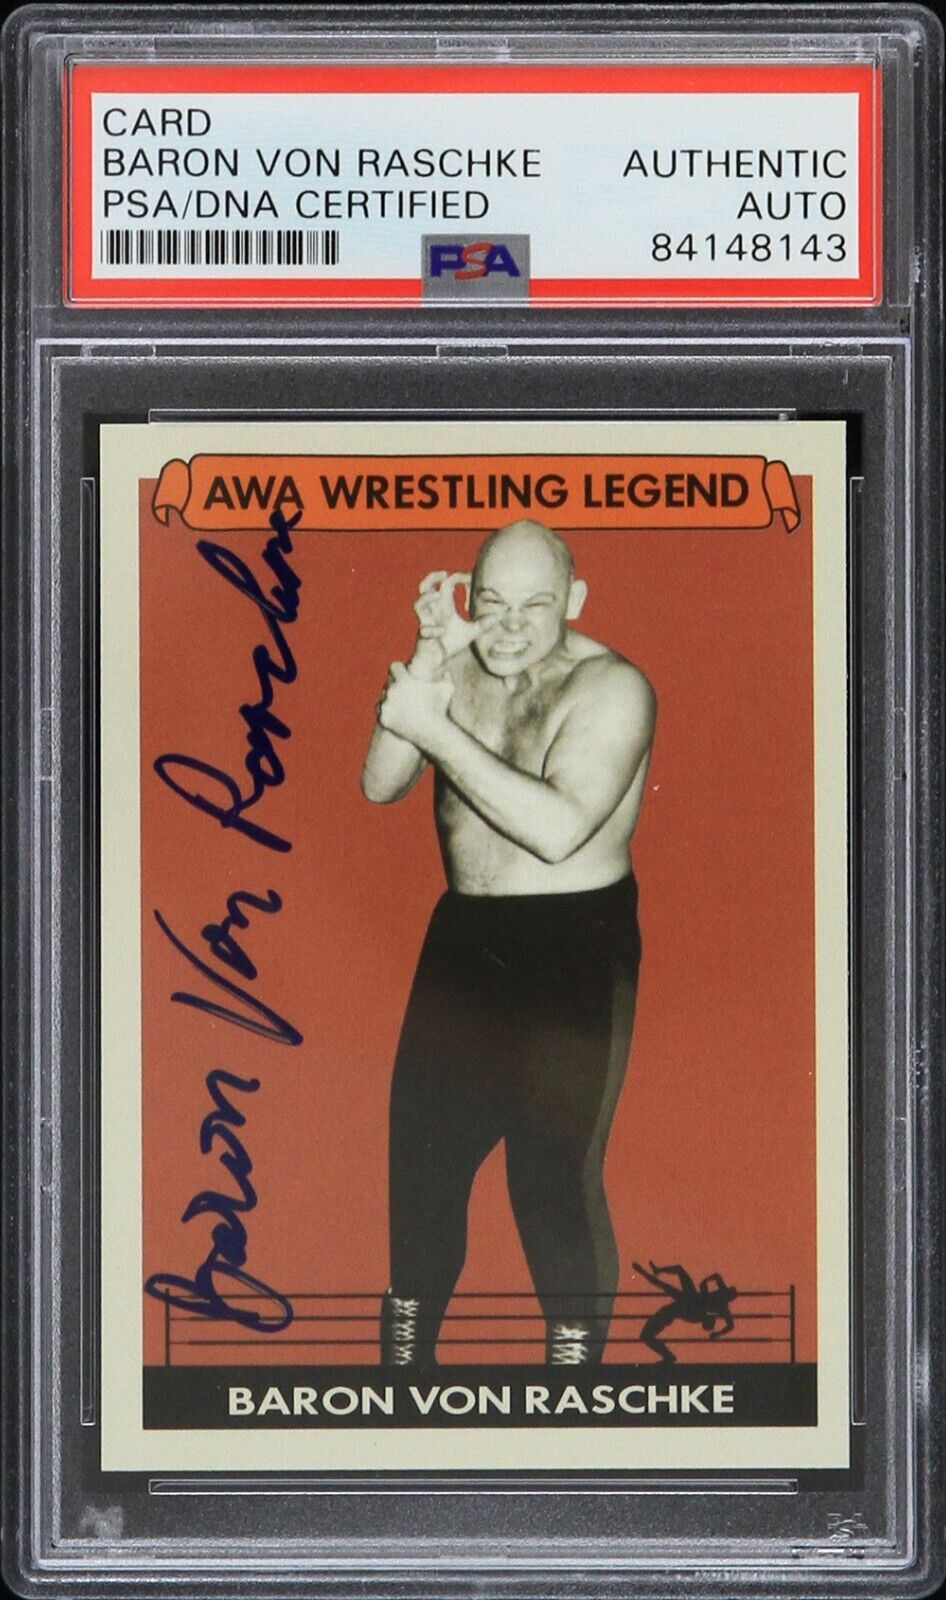 1966-95 Baron Von Raschke AWA Wrestling Legend Signed LE Trading Card (PSA/DNA)